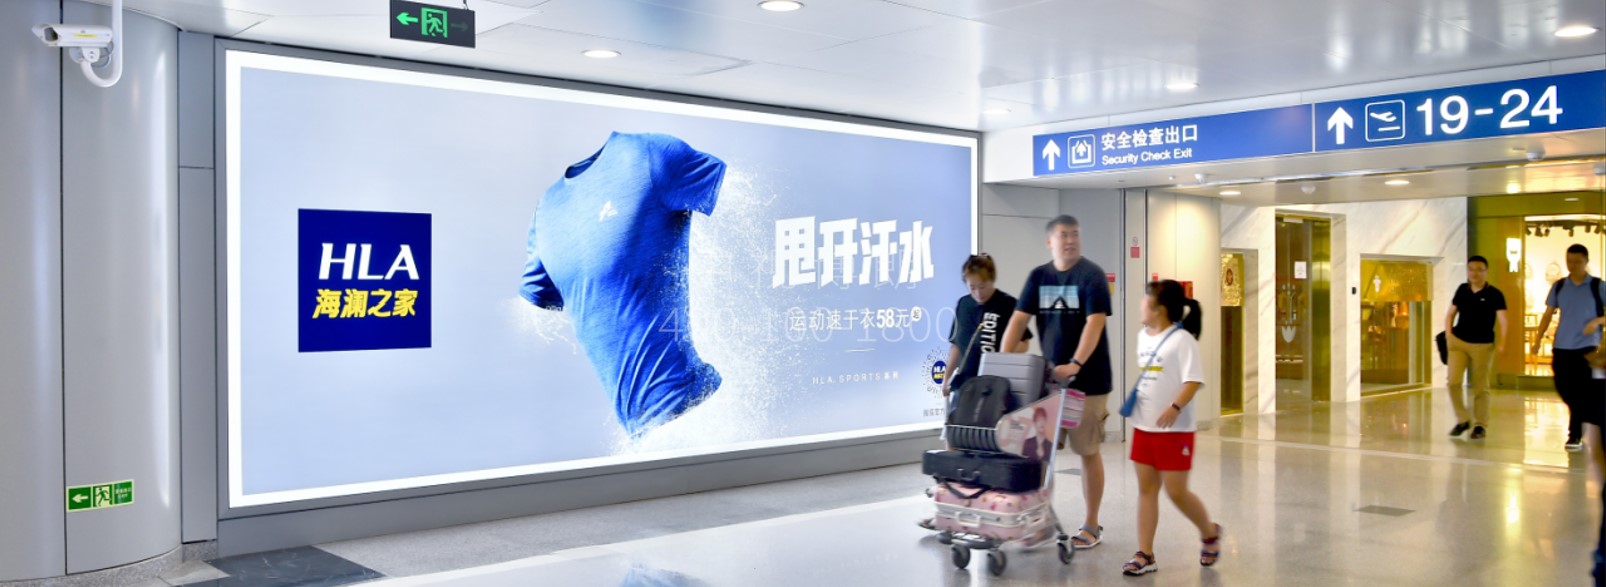 北京首都机场广告-T2 Domestic Departure East Corridor Light Box D017